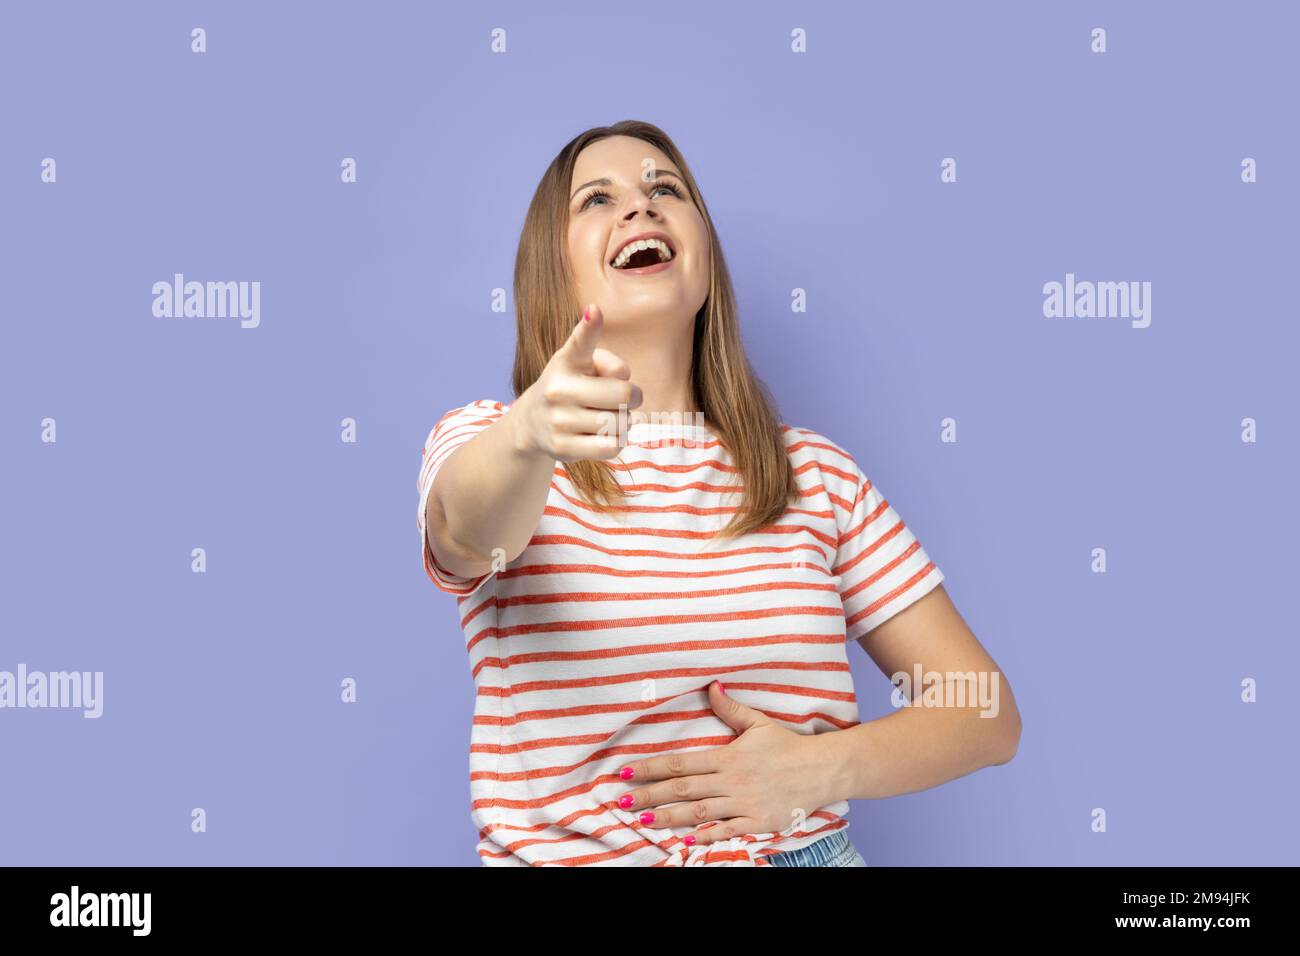 Ha ha, du bist lächerlich. Porträt einer Frau, die ein gestreiftes T-Shirt trägt und mit dem Finger auf die Kamera zeigt, laut lacht und lustige Freundinnen aufzieht. Studio-Aufnahme im Innenbereich isoliert auf lila Hintergrund. Stockfoto